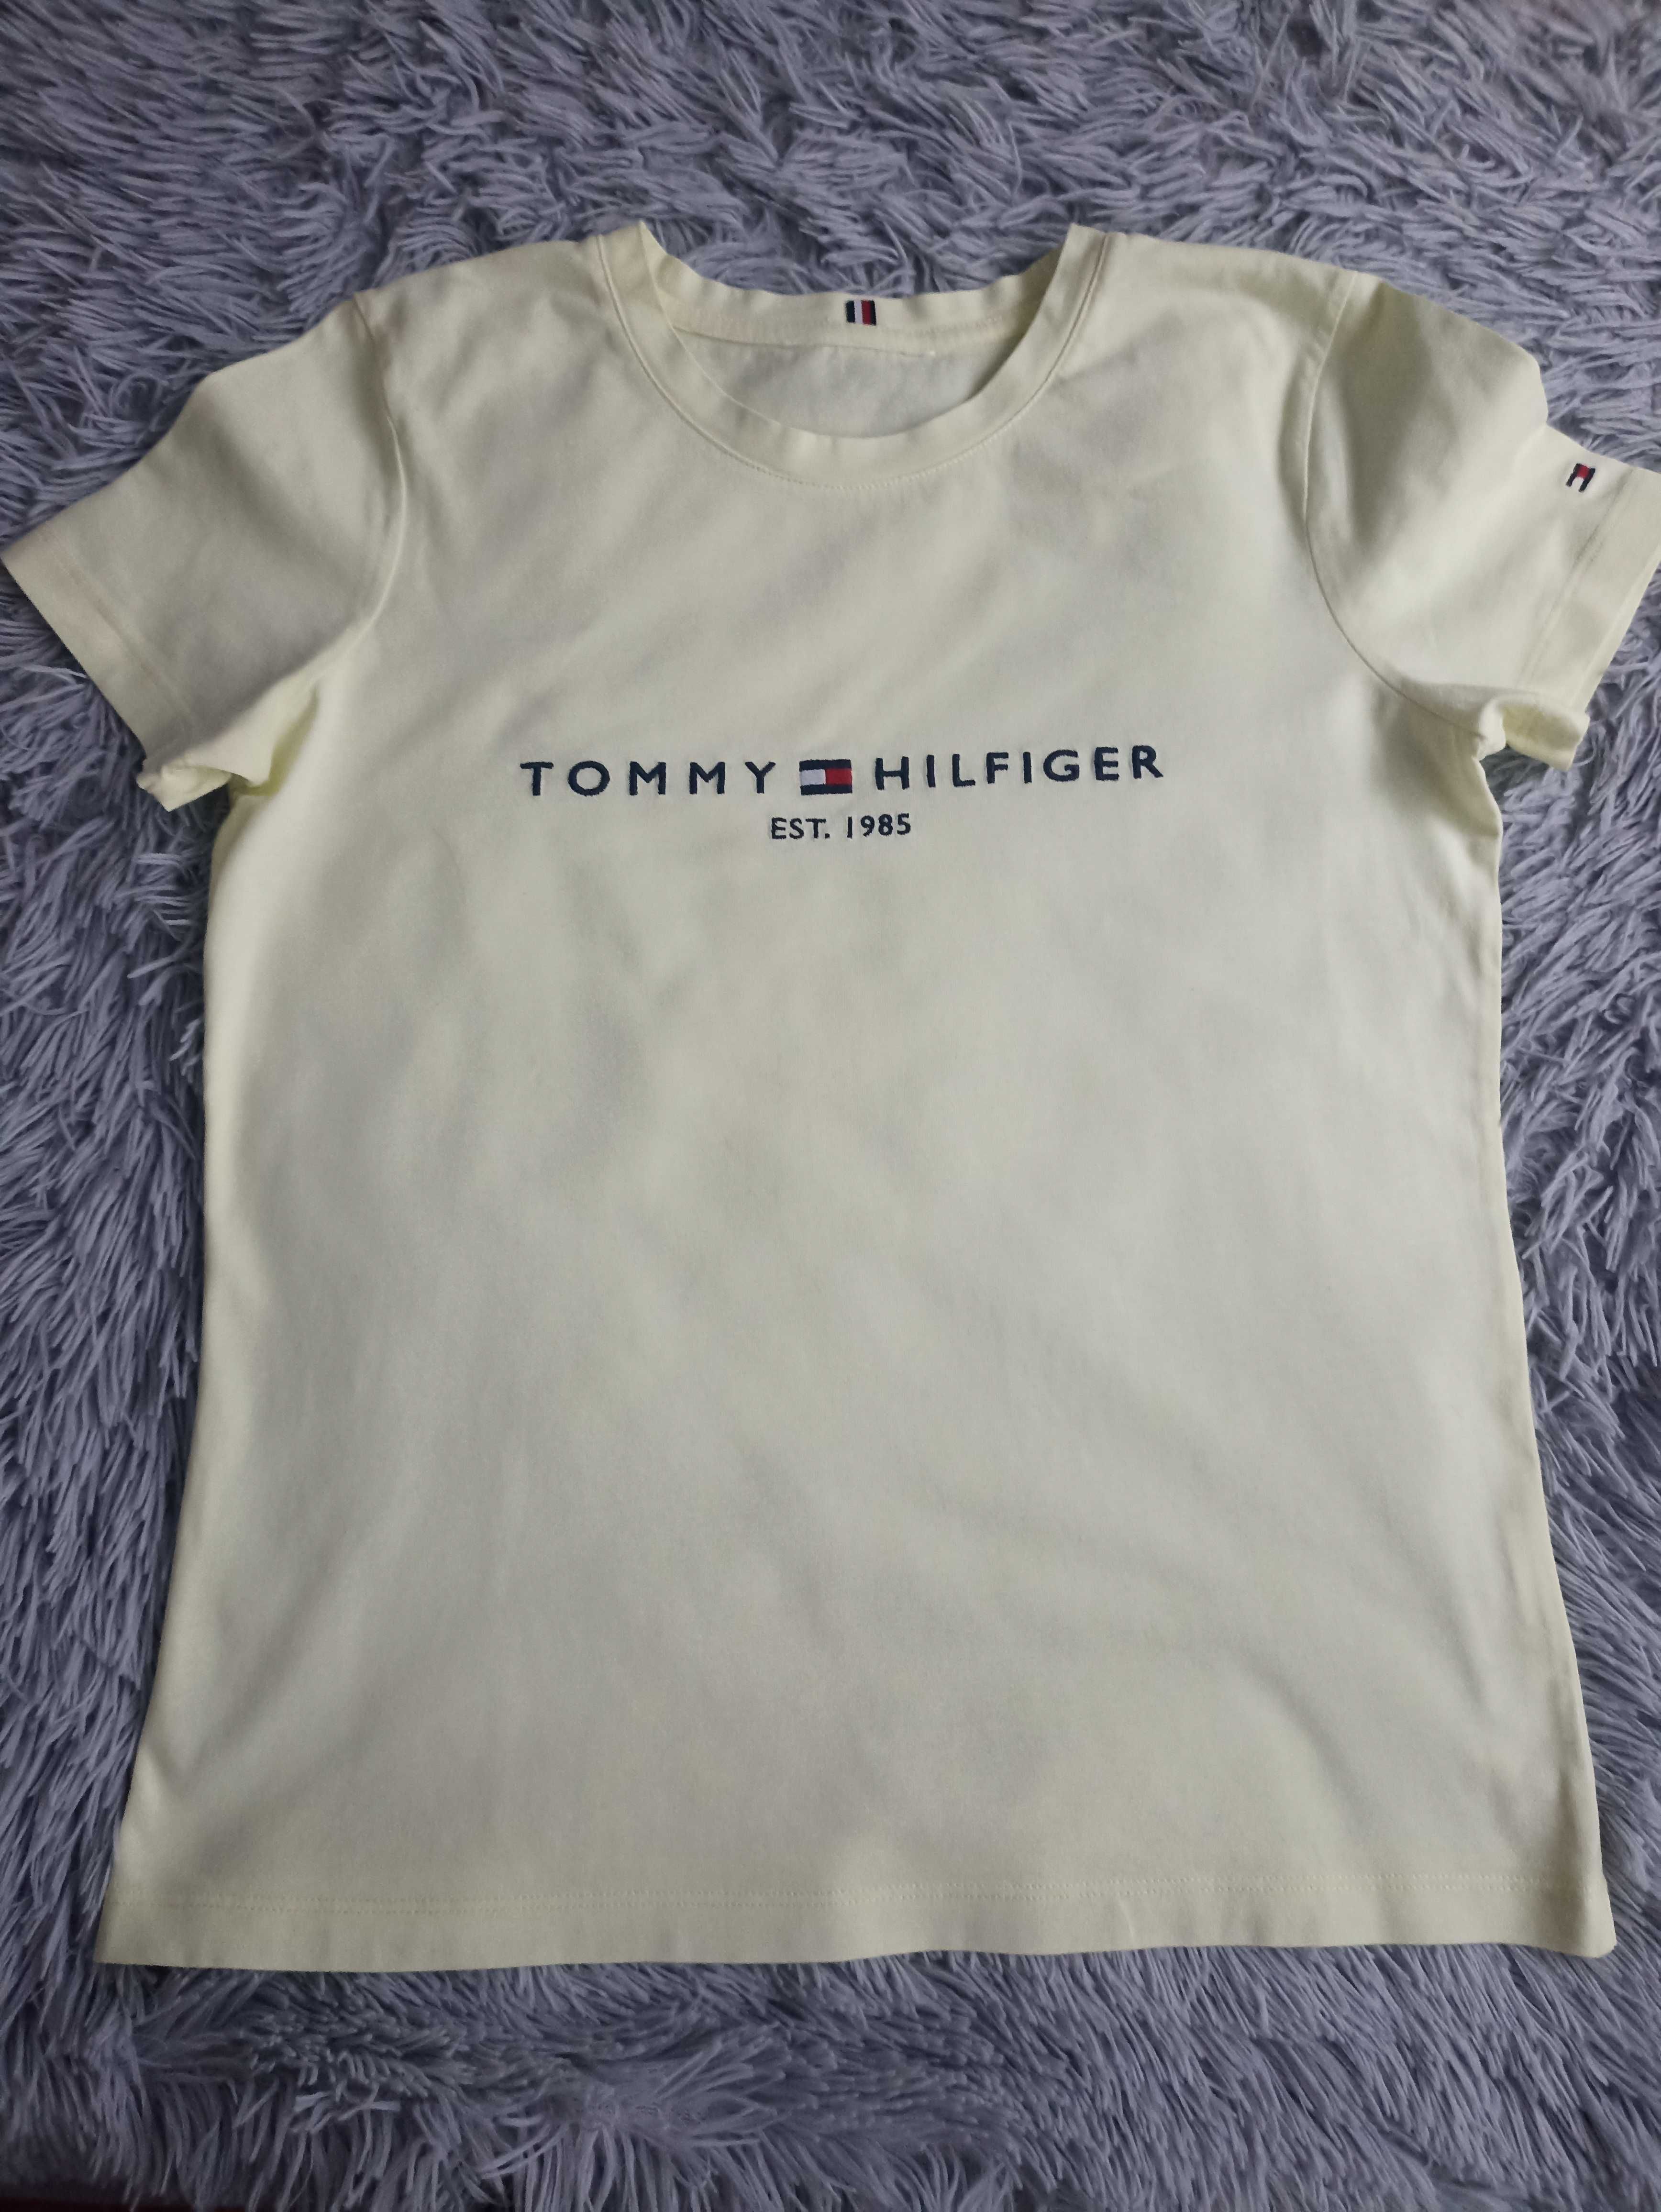 Tommy Hilfiger t-shirt damski kolor żółty rozmiar XS/S